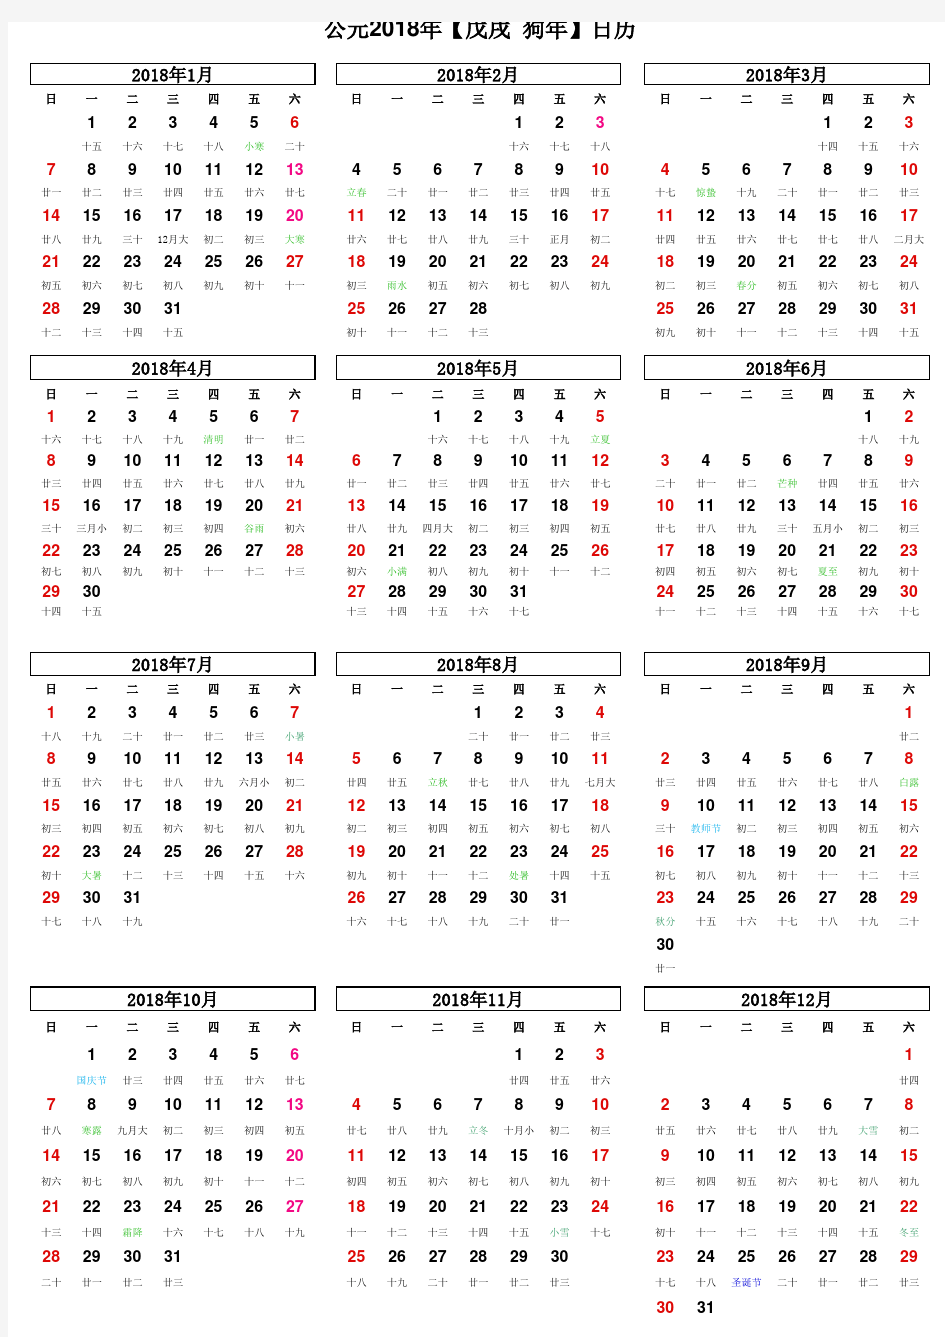 2017日历,2018年日历(含农历)打印版